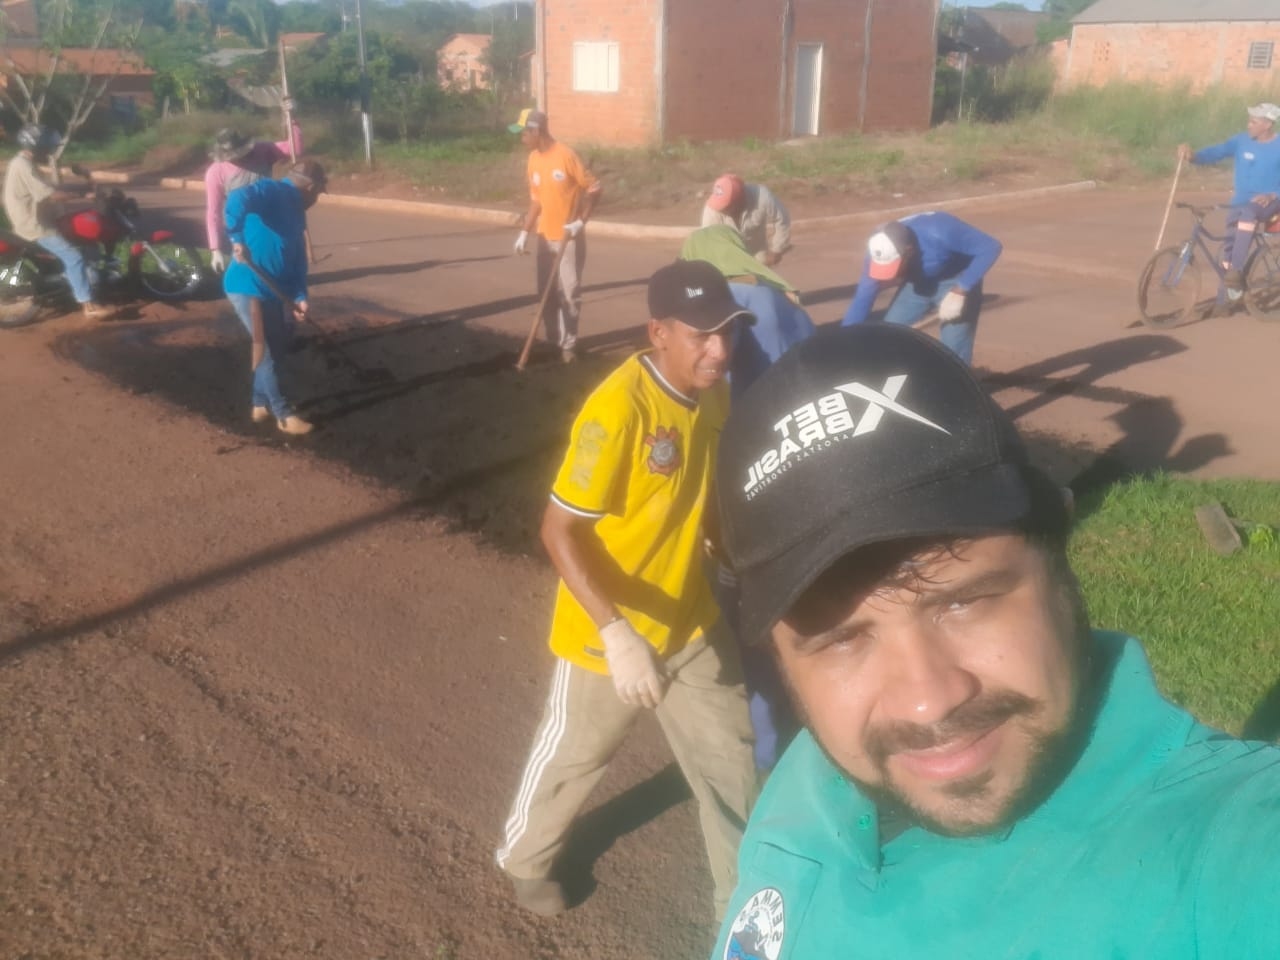 Prefeitura realiza operação tapa buraco em ruas de Angico